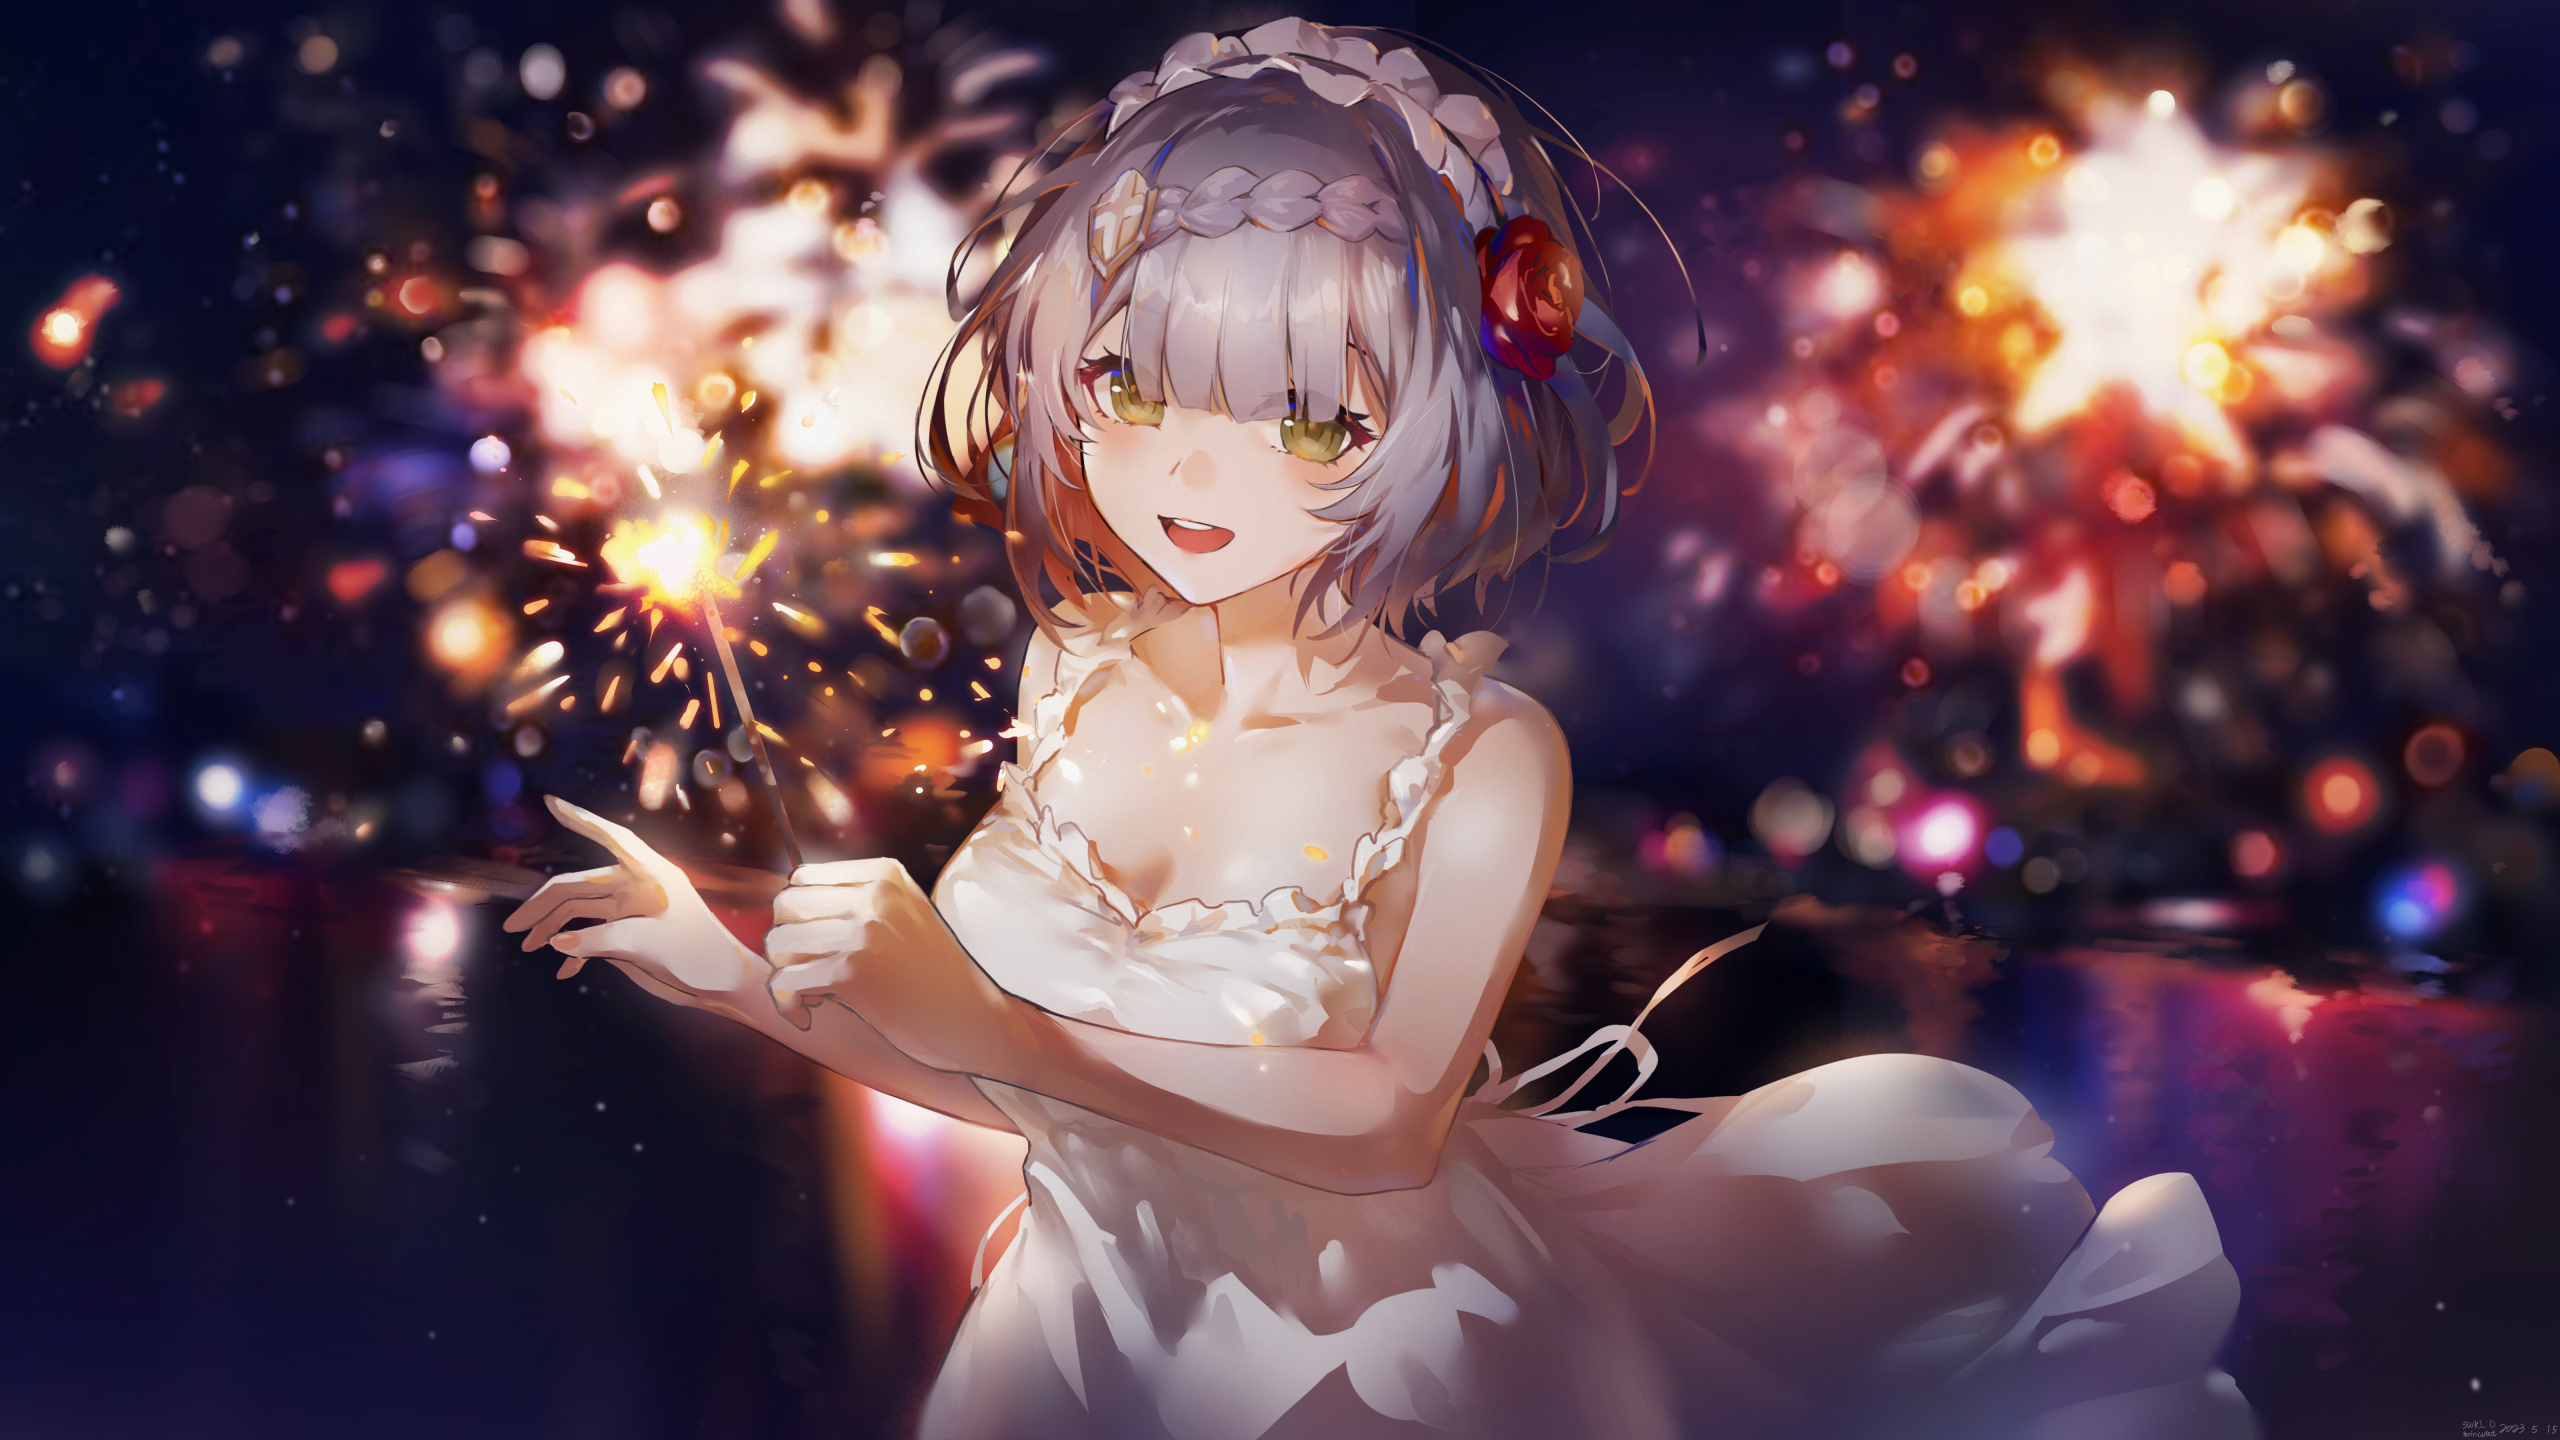 White dress, cute anime girl, art, 2560x1440 wallpaper